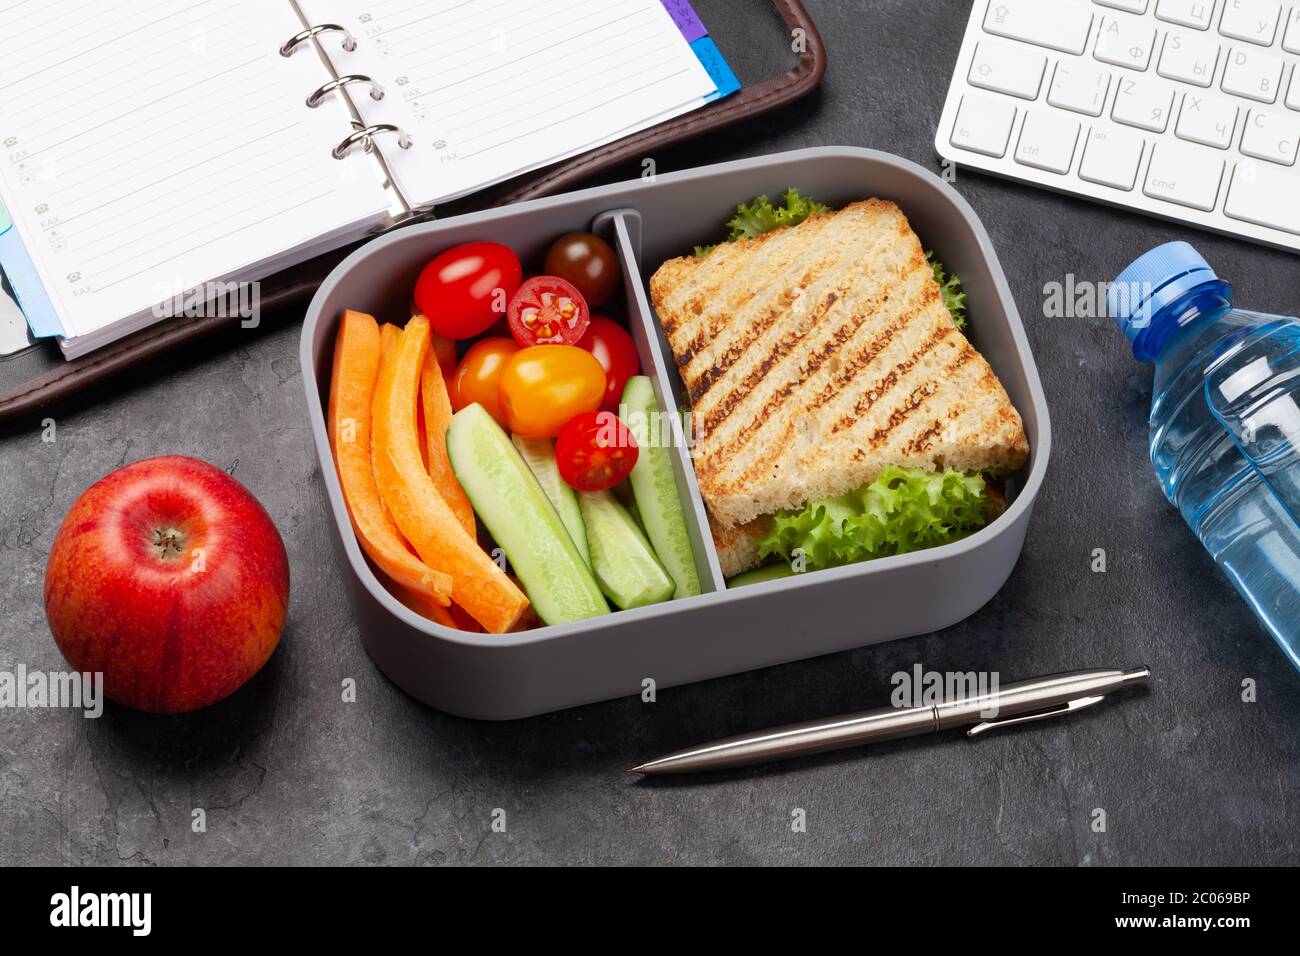 https://c8.alamy.com/compes/2c069bp/caja-de-almuerzo-saludable-con-sandwich-y-verduras-en-la-mesa-de-la-oficina-2c069bp.jpg